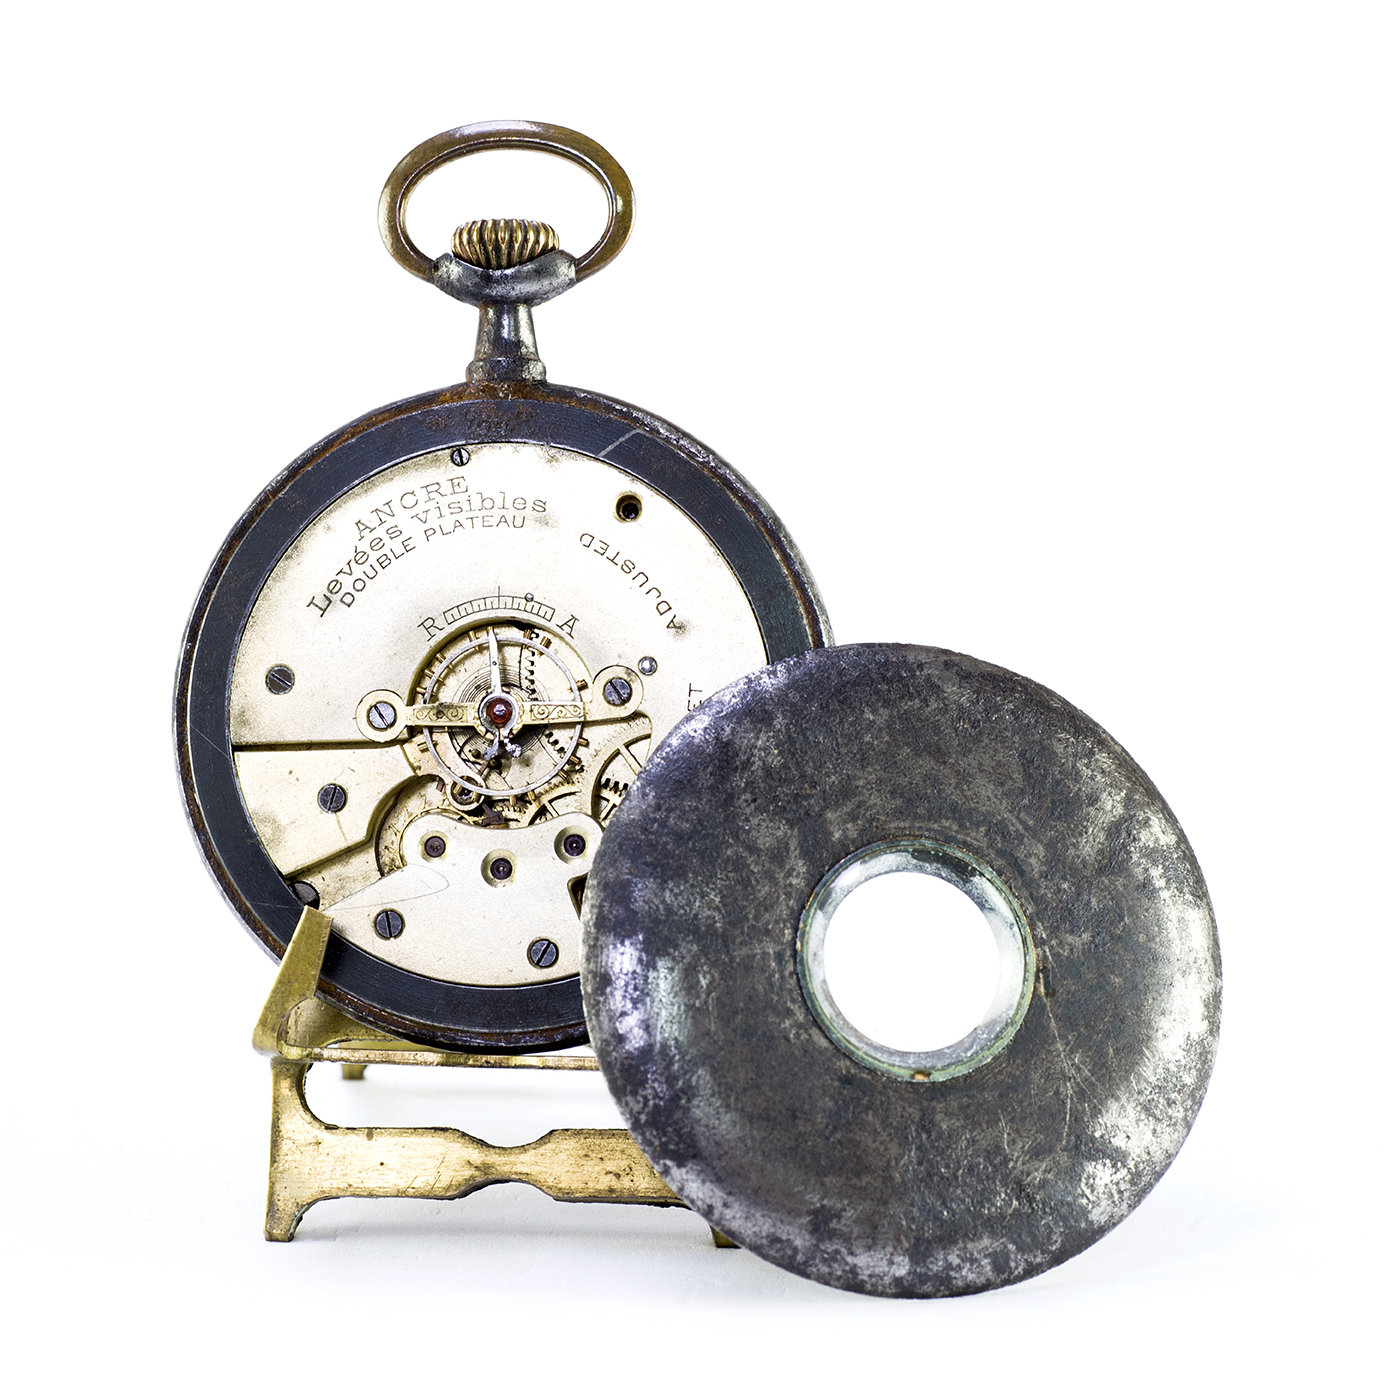 Reloj Suizo de Bolsillo, lepine y remontoir. Suiza, ca. 1900.